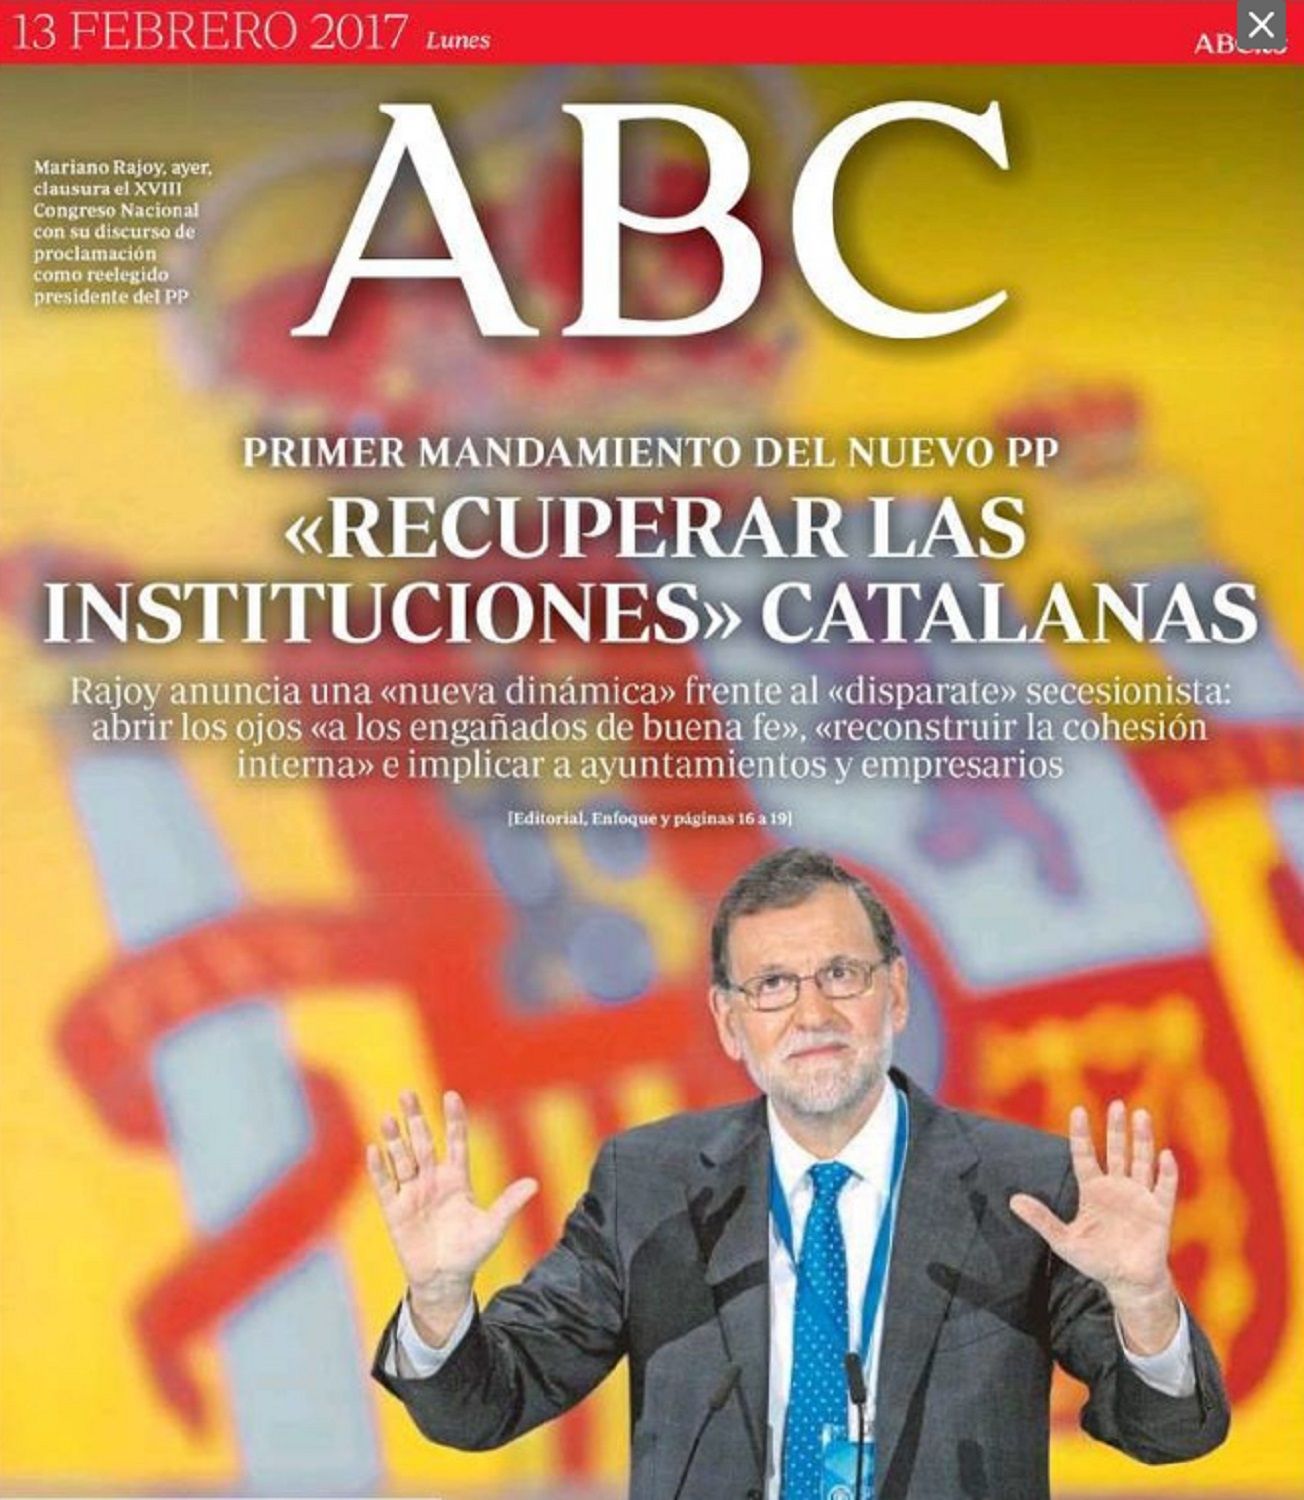 L'ABC crida el PP a “recuperar" unes "institucions catalanes” que no ha tingut mai